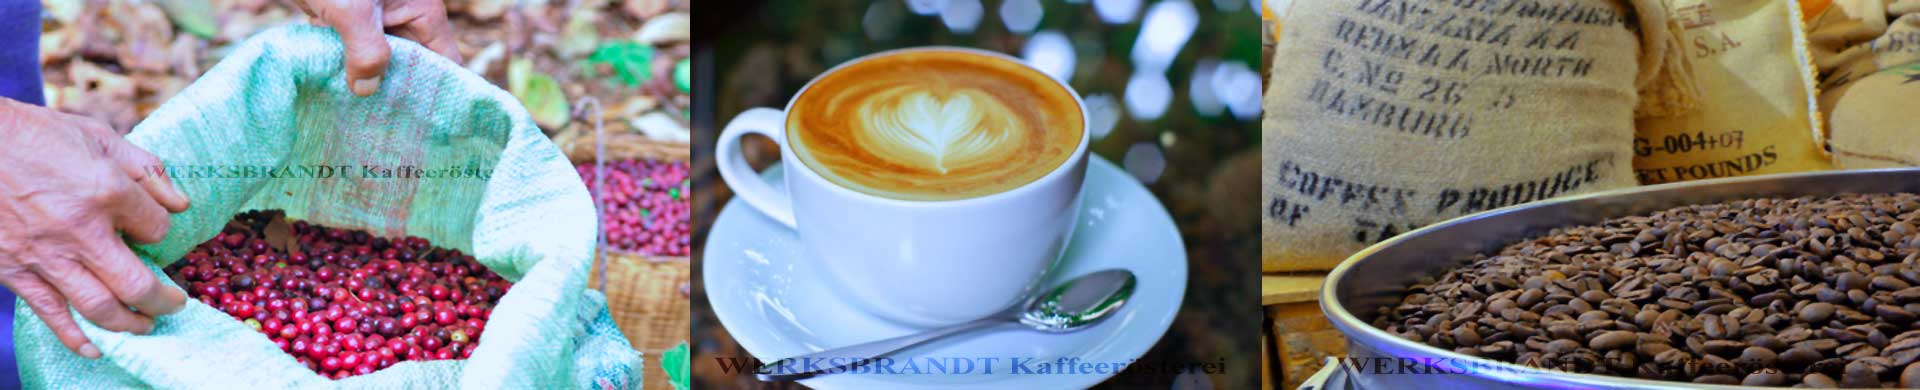 WERKSBRANDT Kaffeerösterei Impressionen Kaffeekirschen im Sack Latteart Kaffee im Kühlsieb